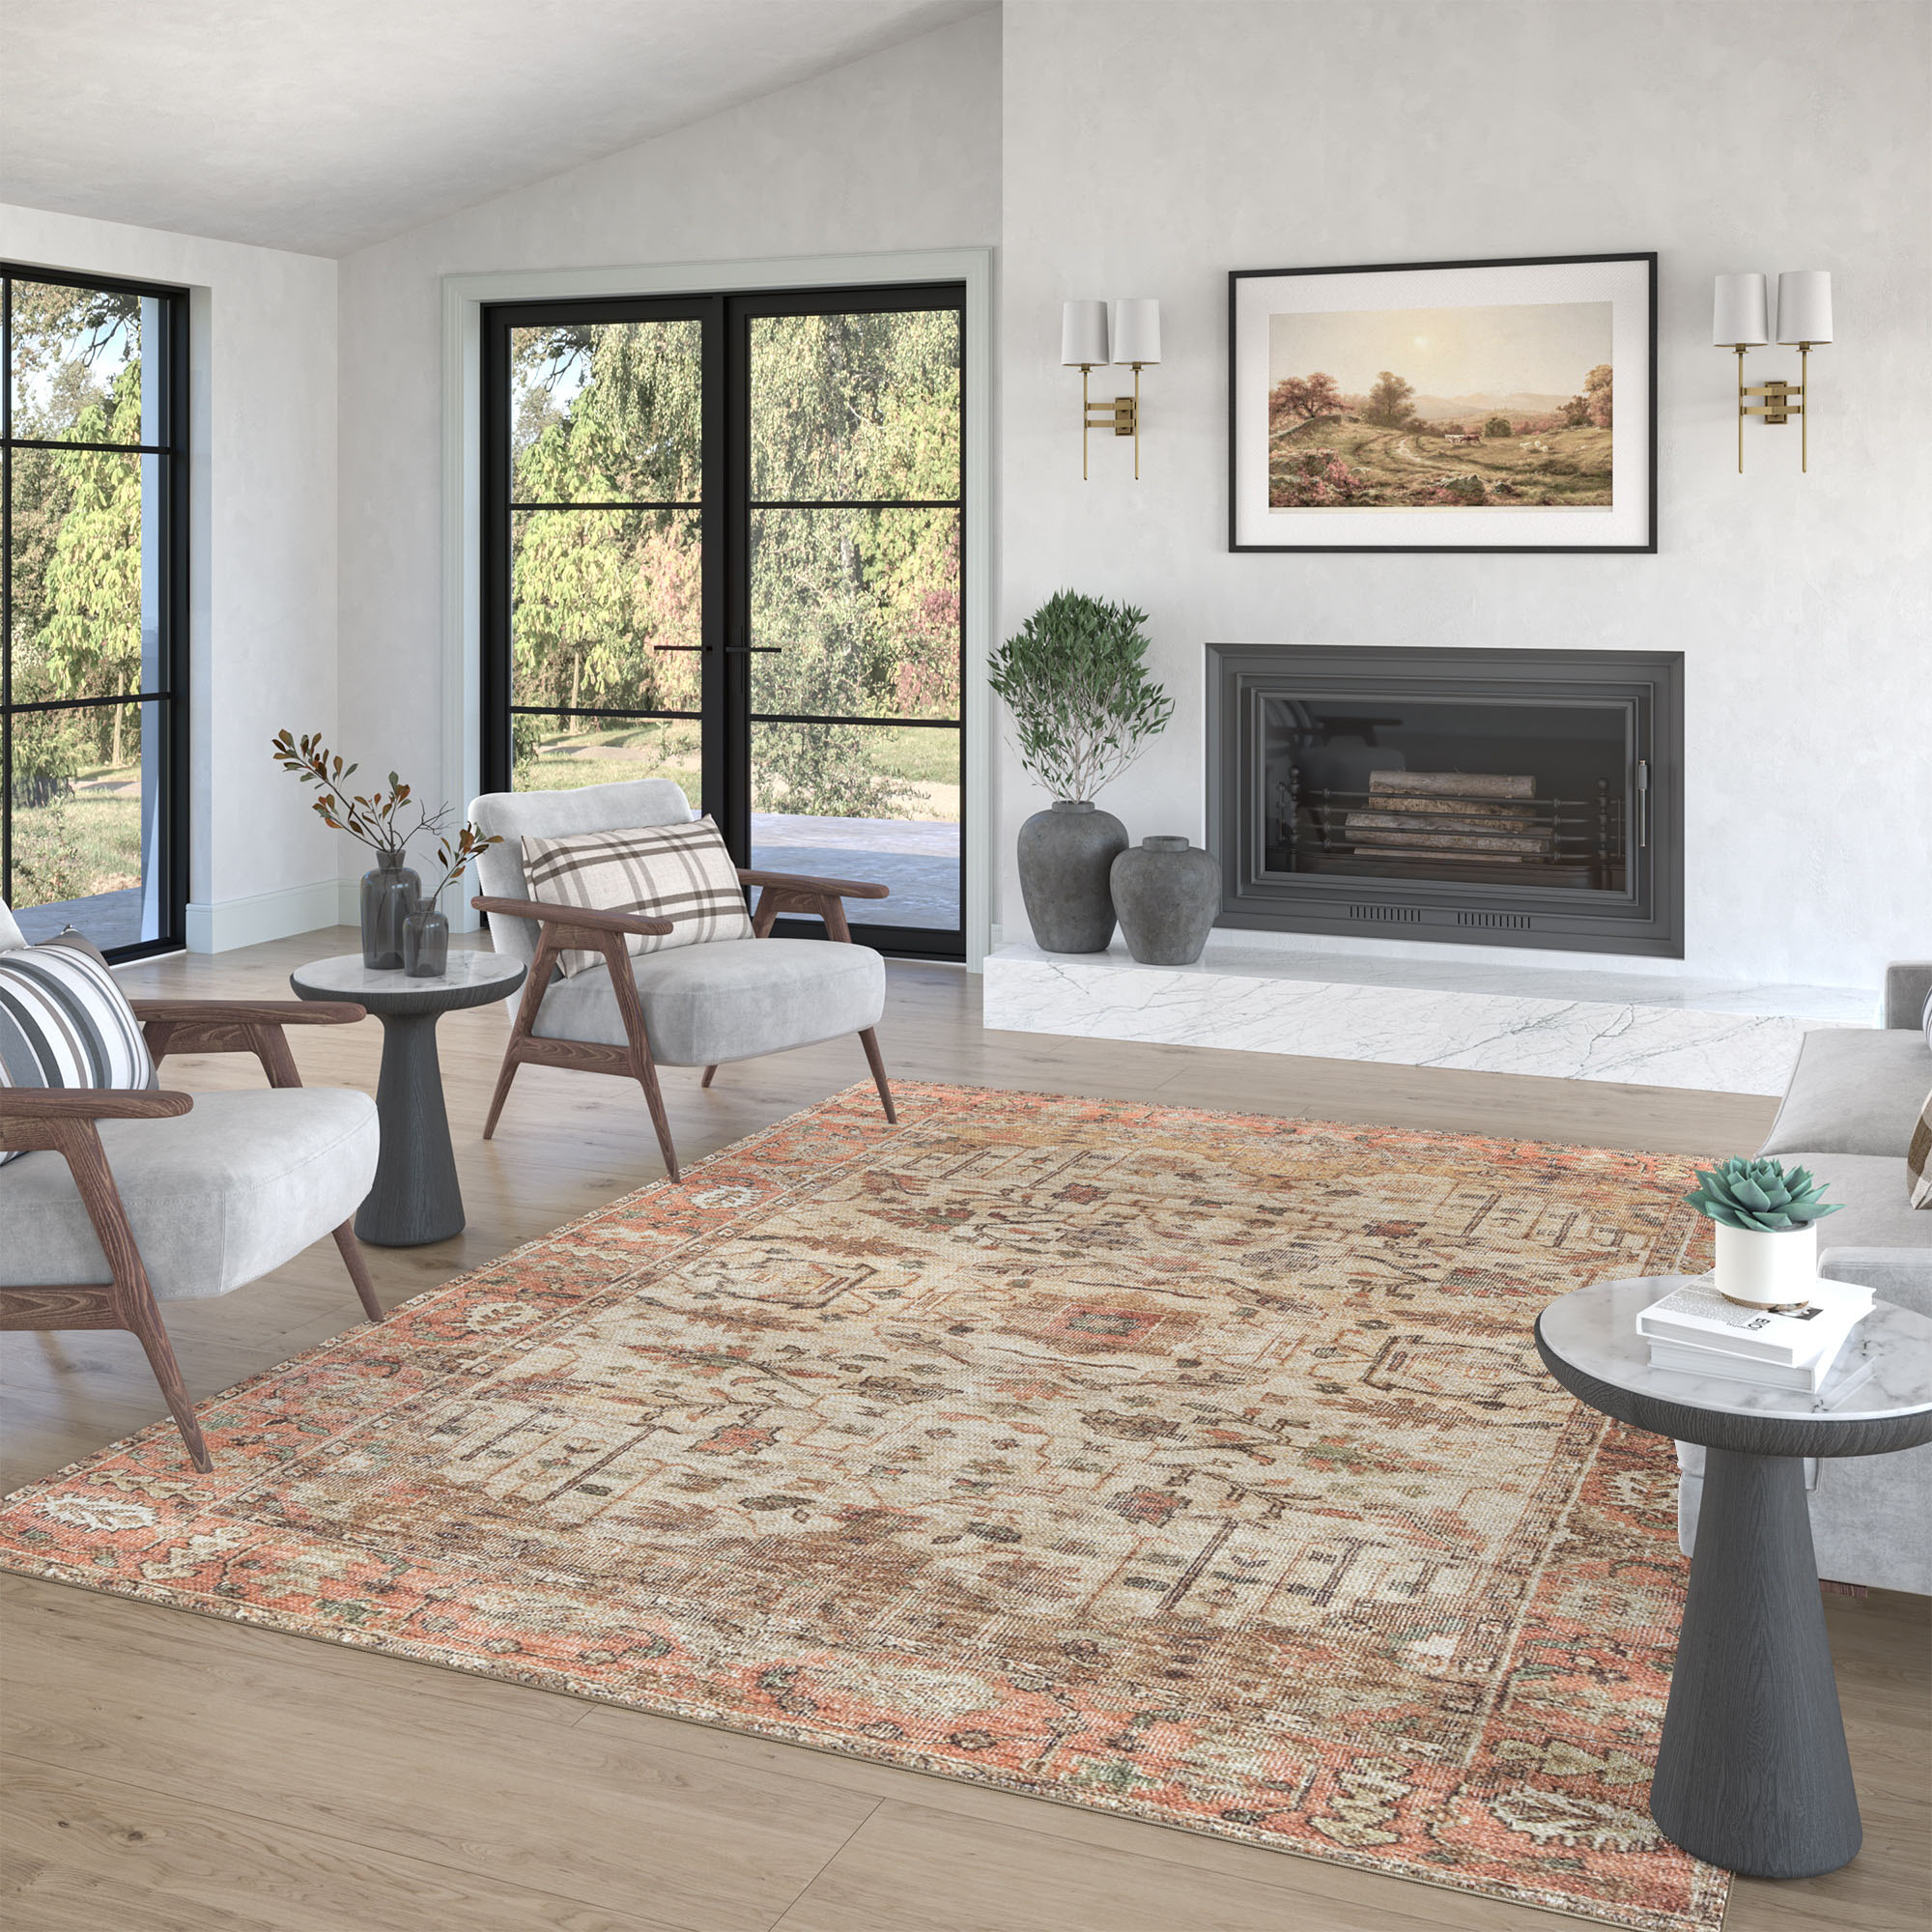 Rio Terracotta Tile Reversible Indoor Outdoor Patio Floor Mat by World Market